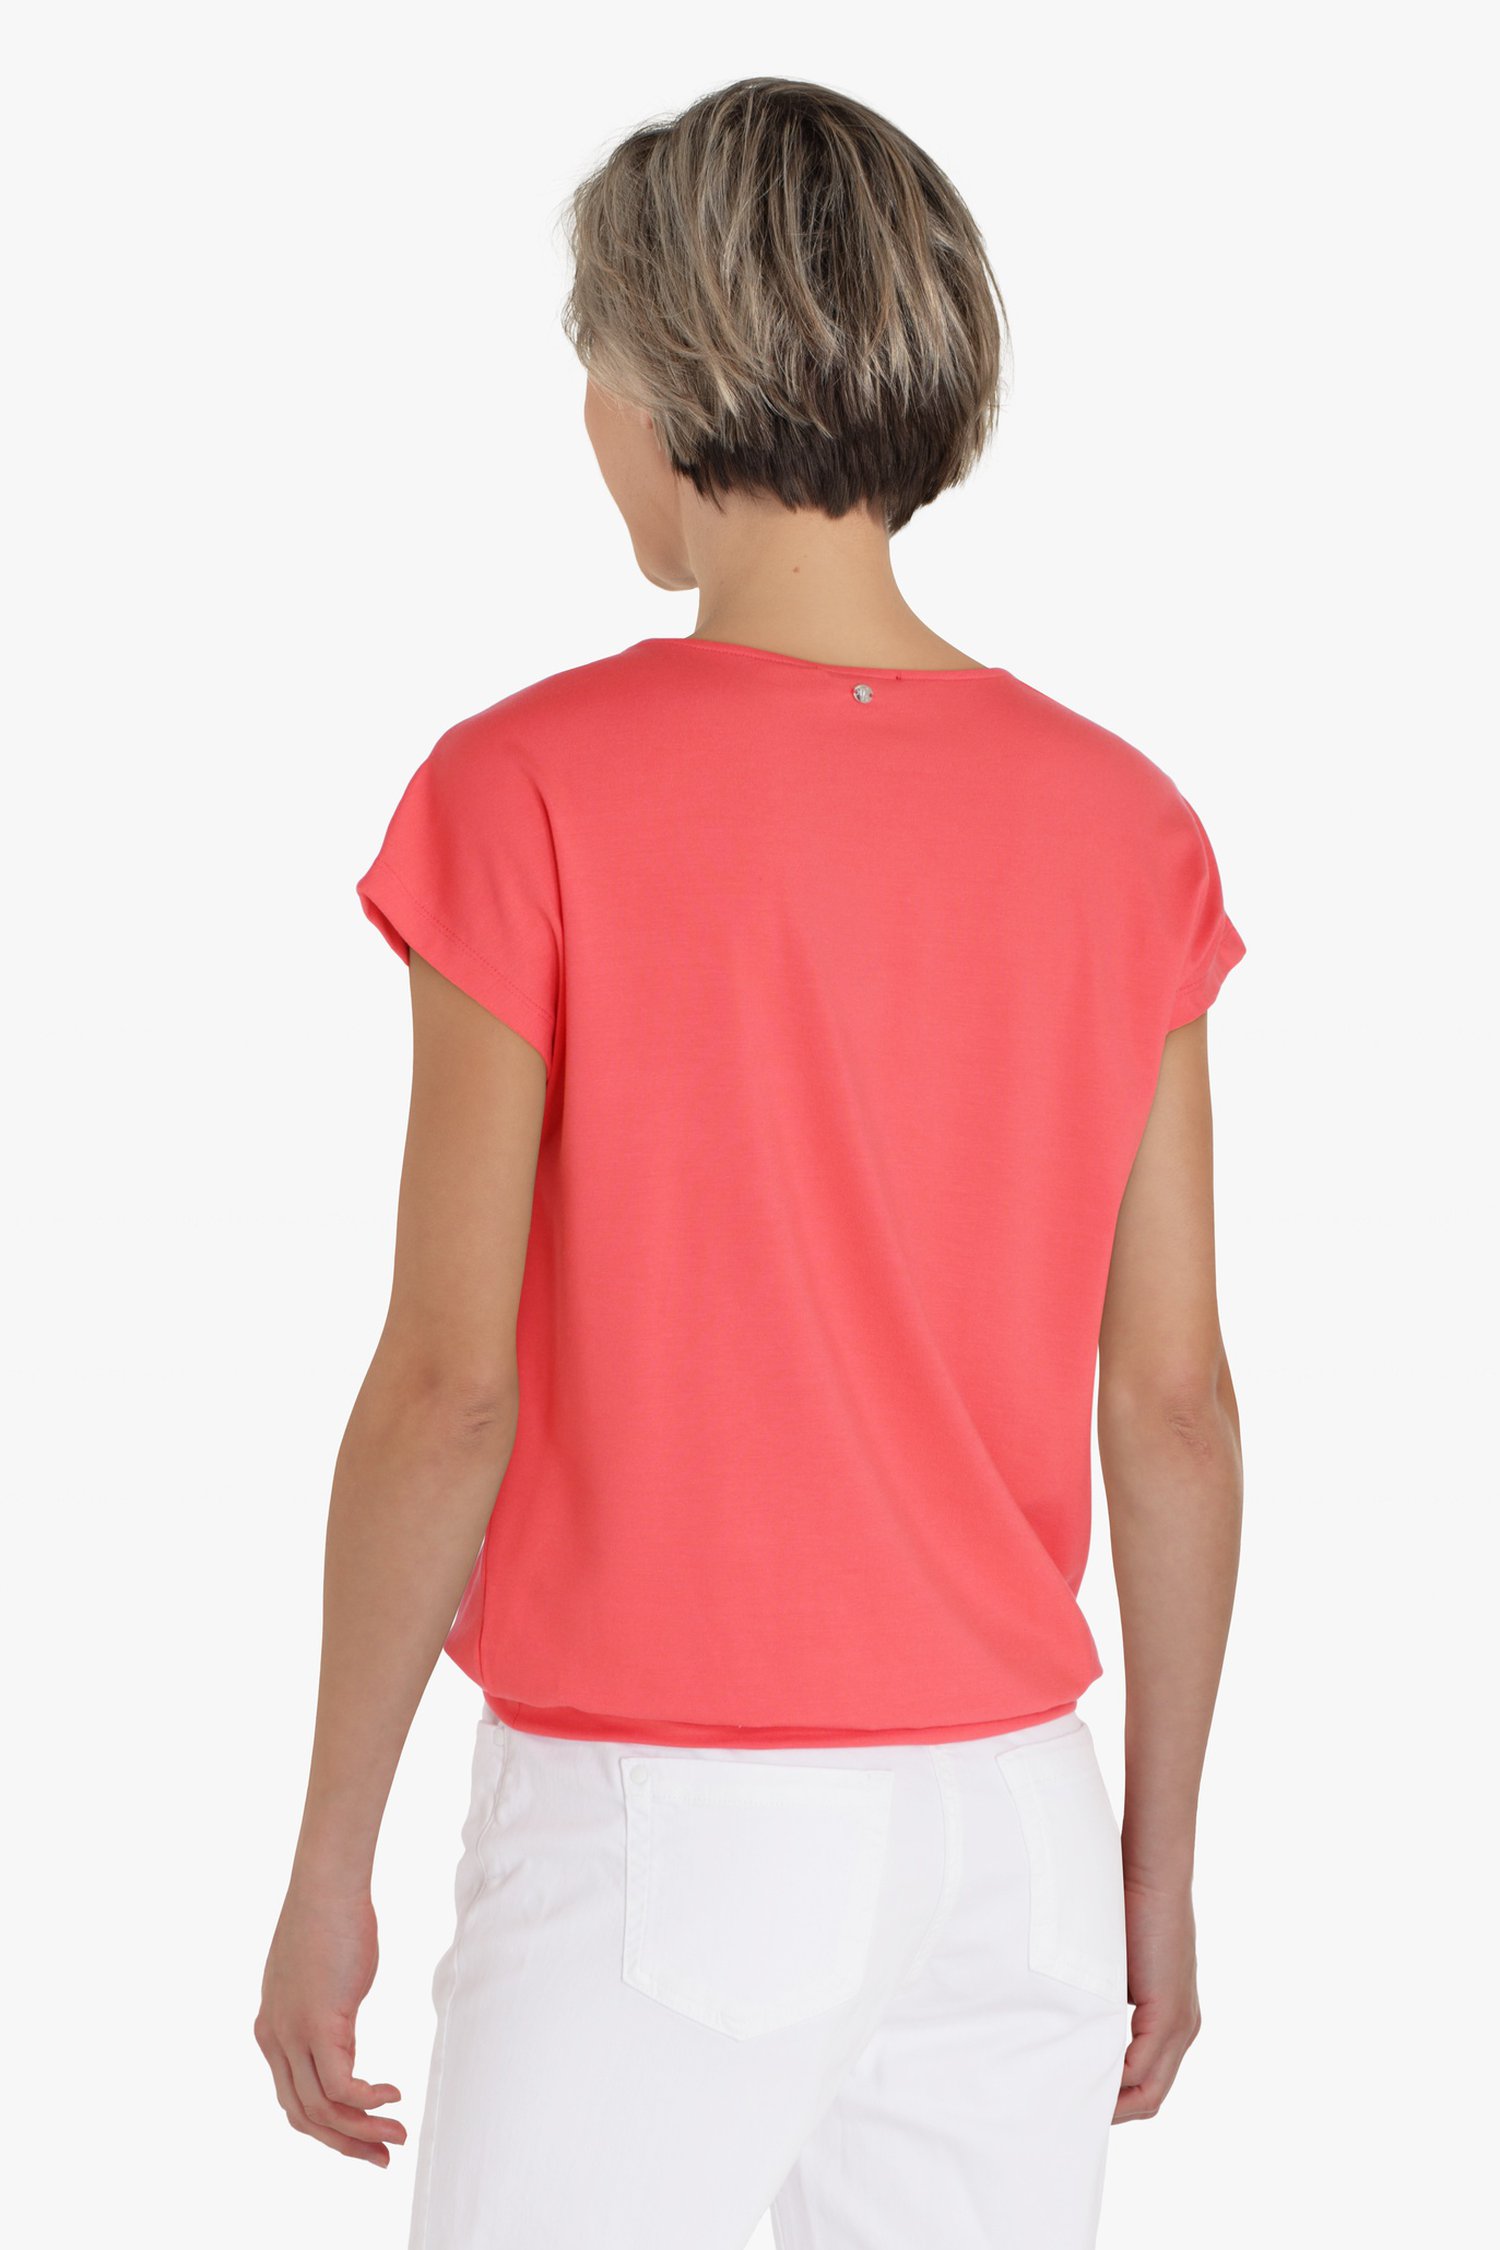 Roodroze T-shirt met detailhals  van Claude Arielle voor Dames